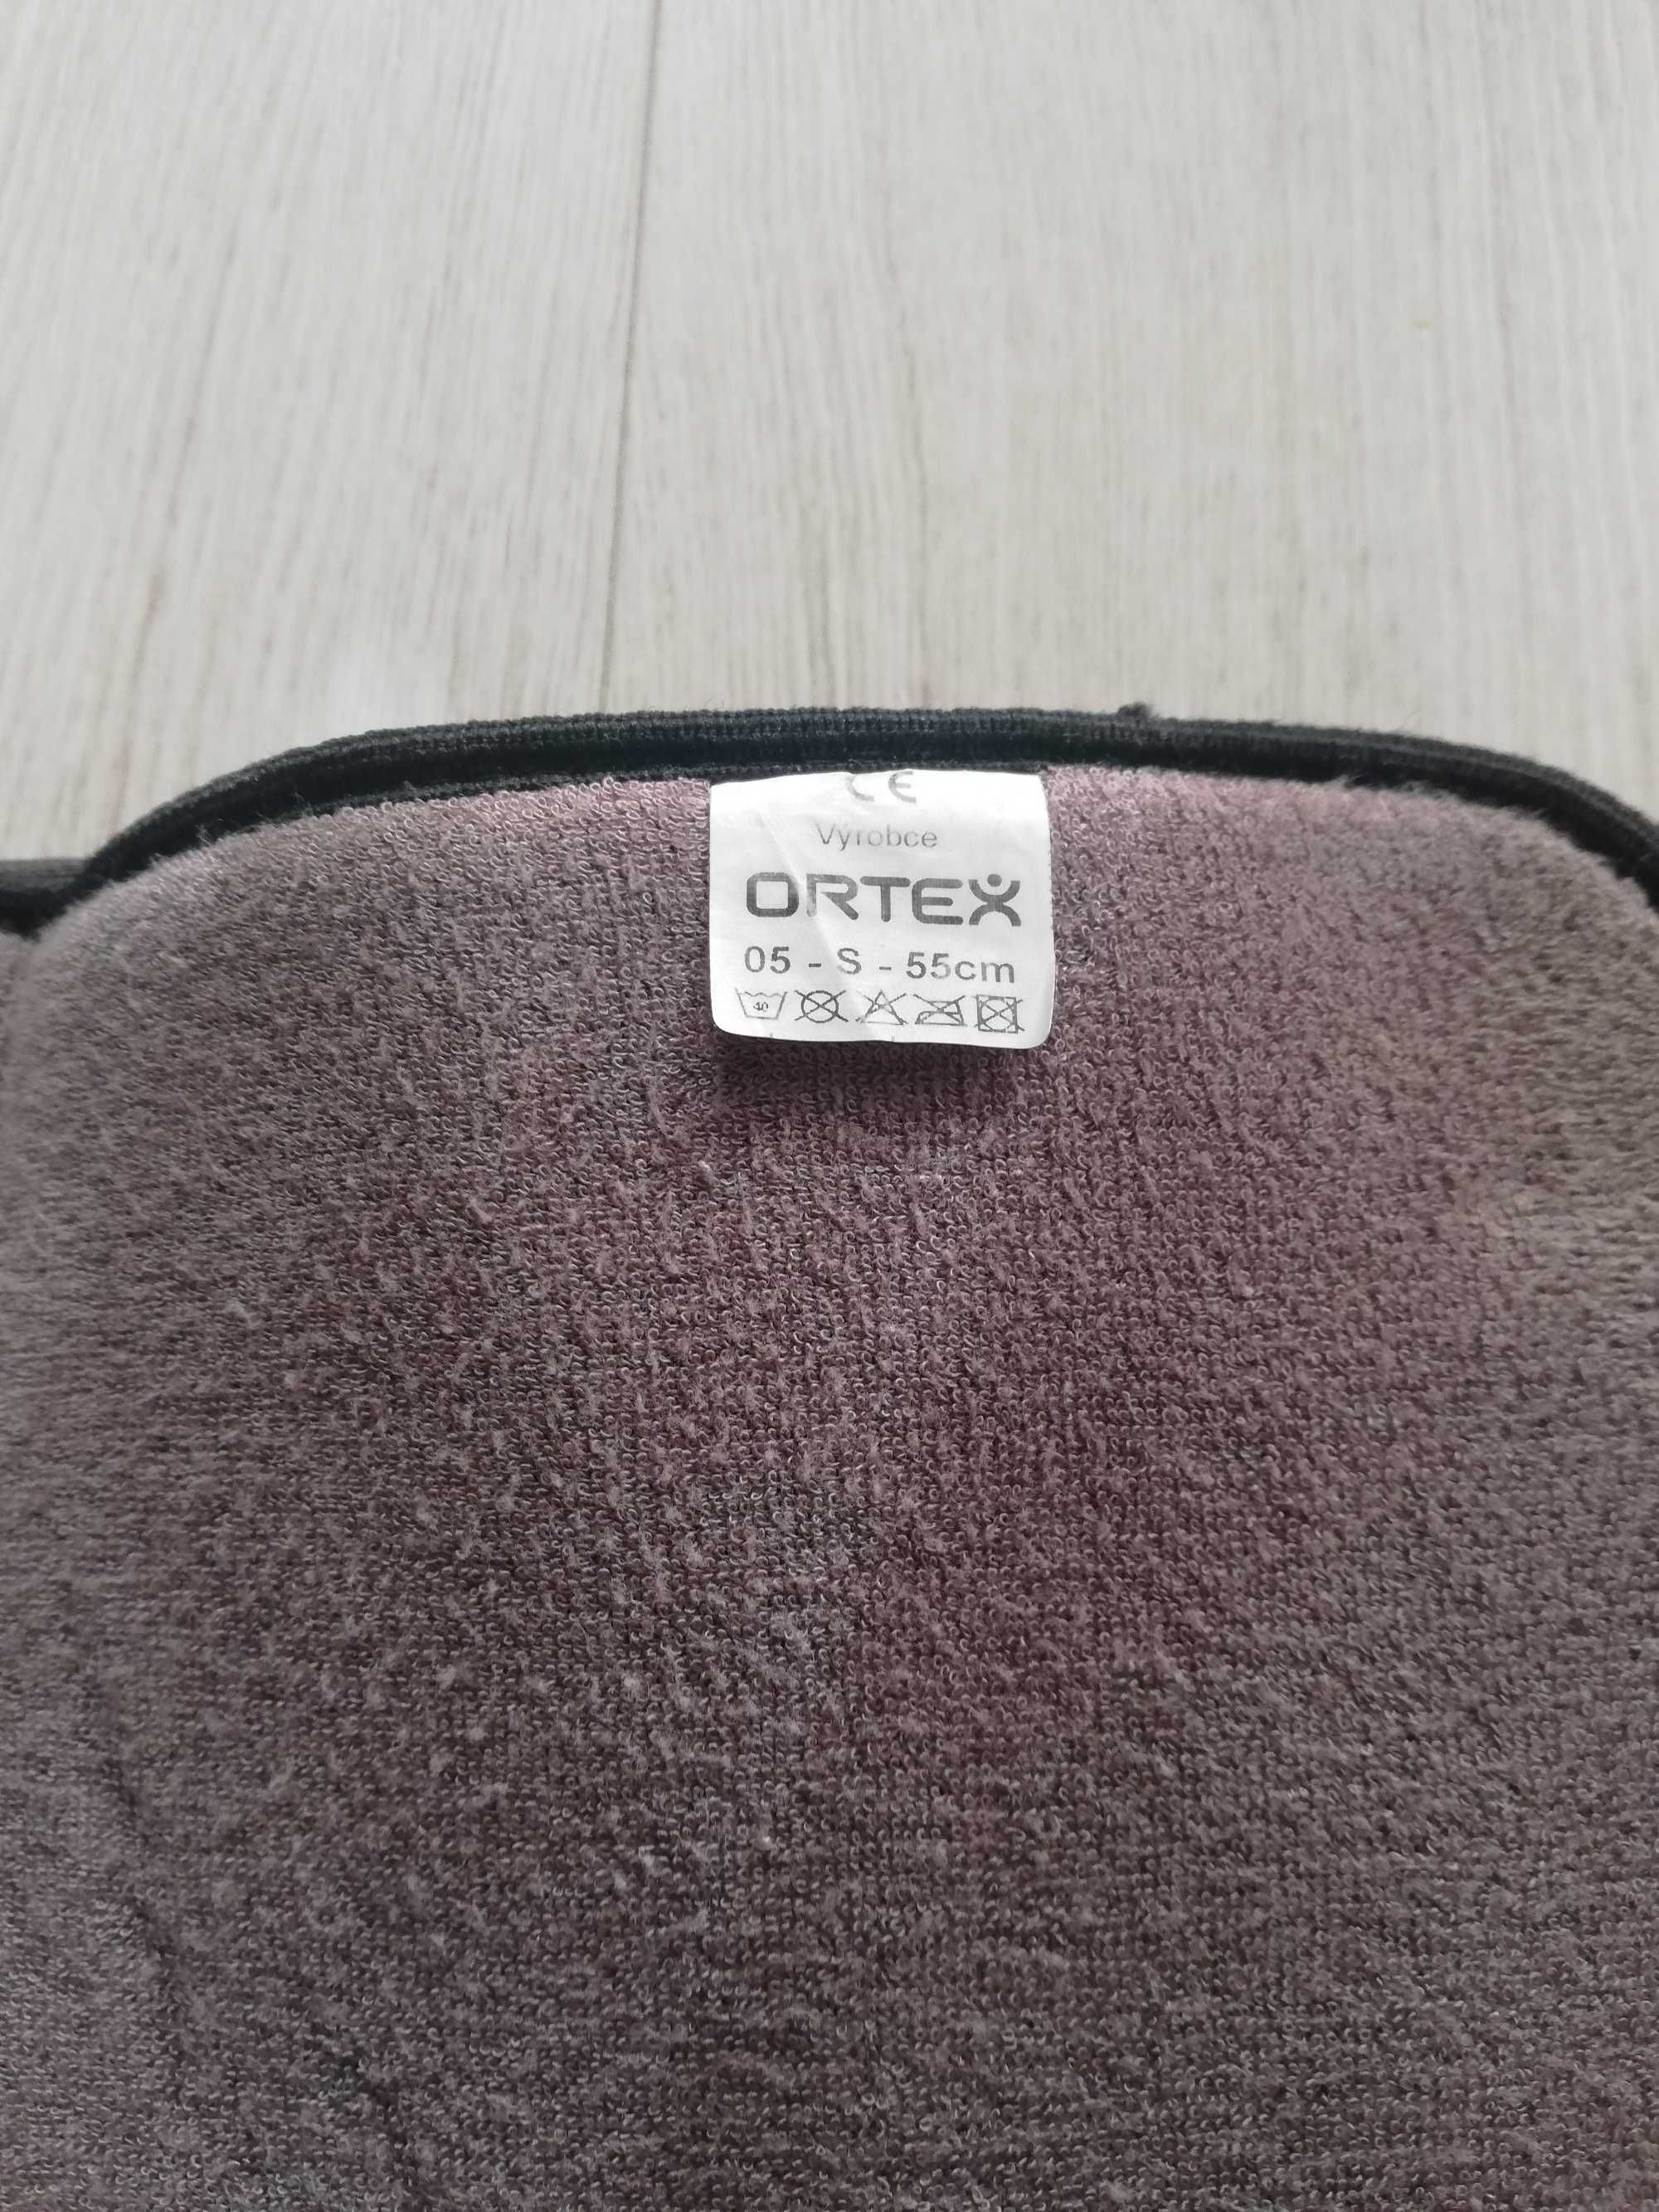 Orteza ORTEX r. 55